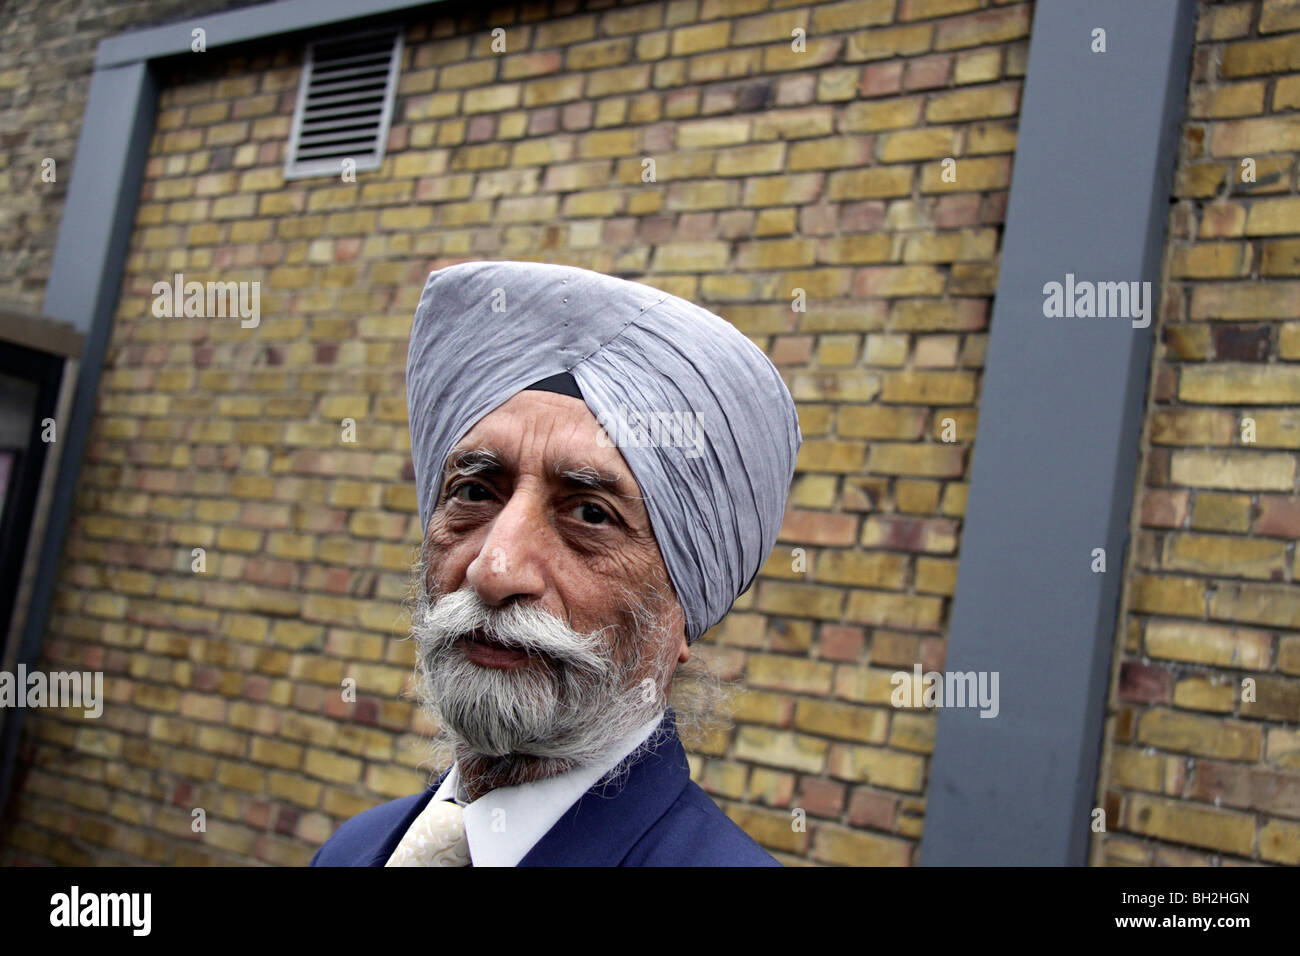 Homme sikh à Upton Park, East London Banque D'Images